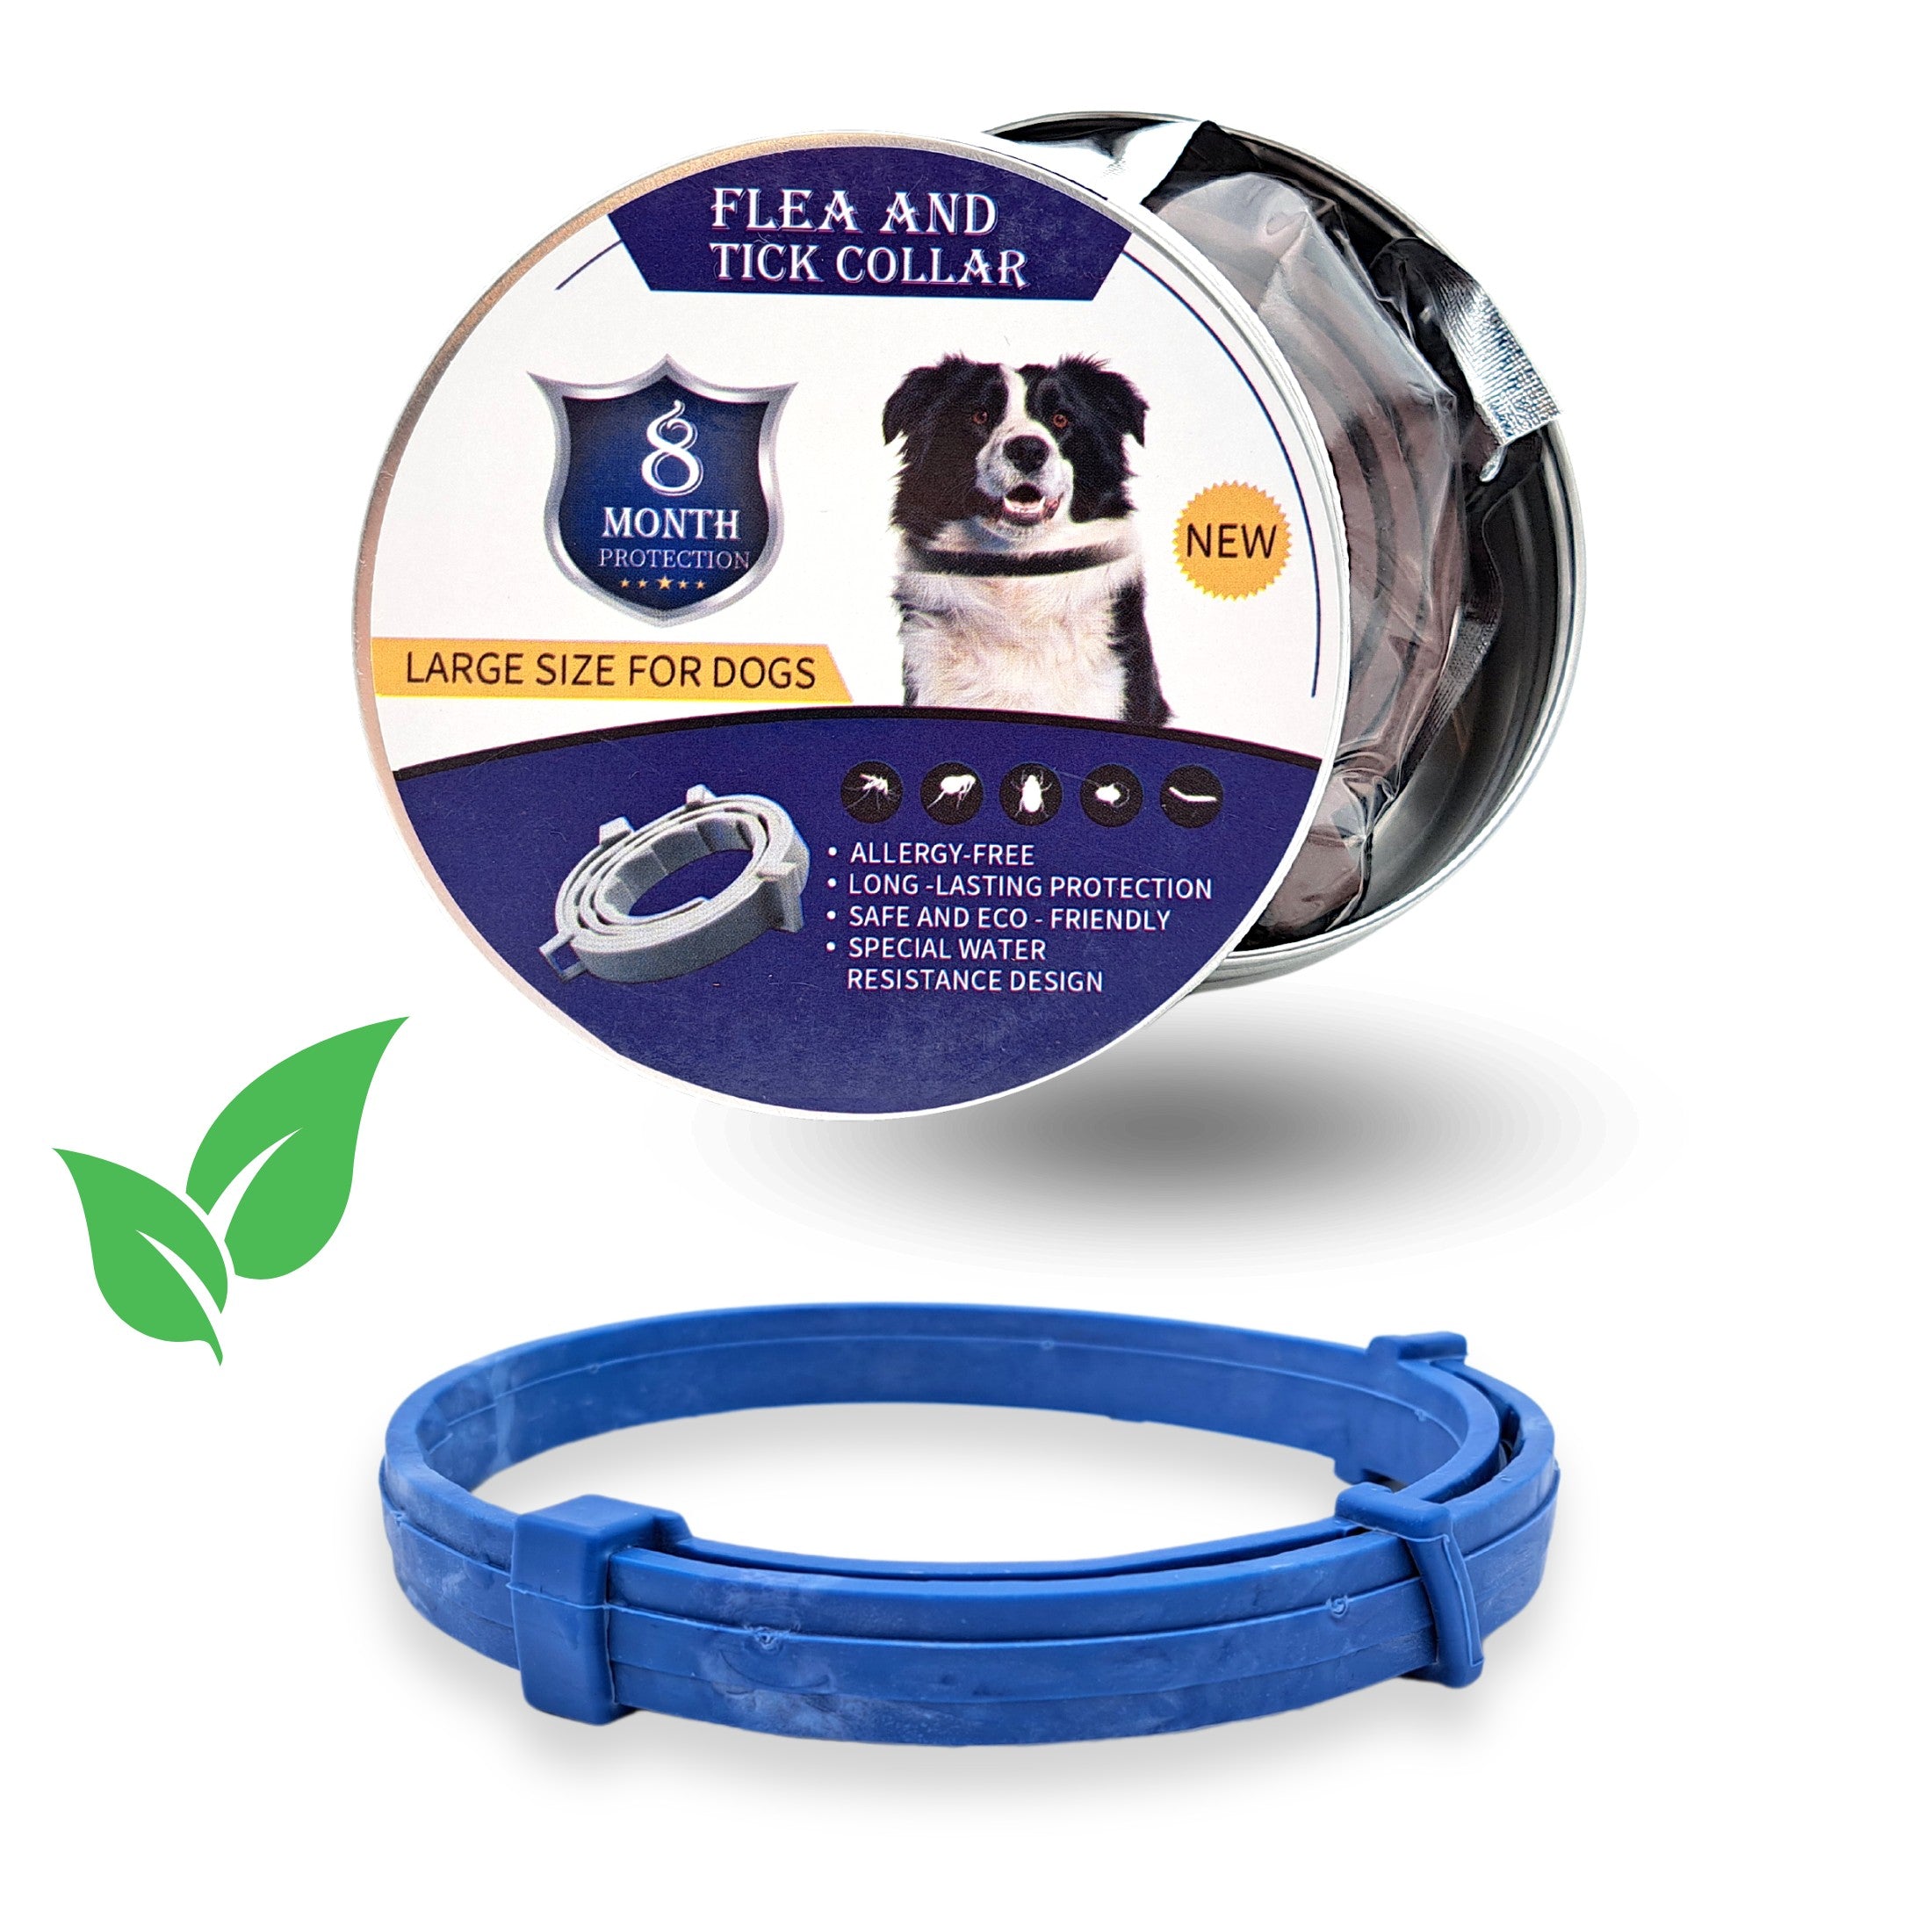 Pflanzliches Zeckenhalsband für Hunde in der Farbe blau